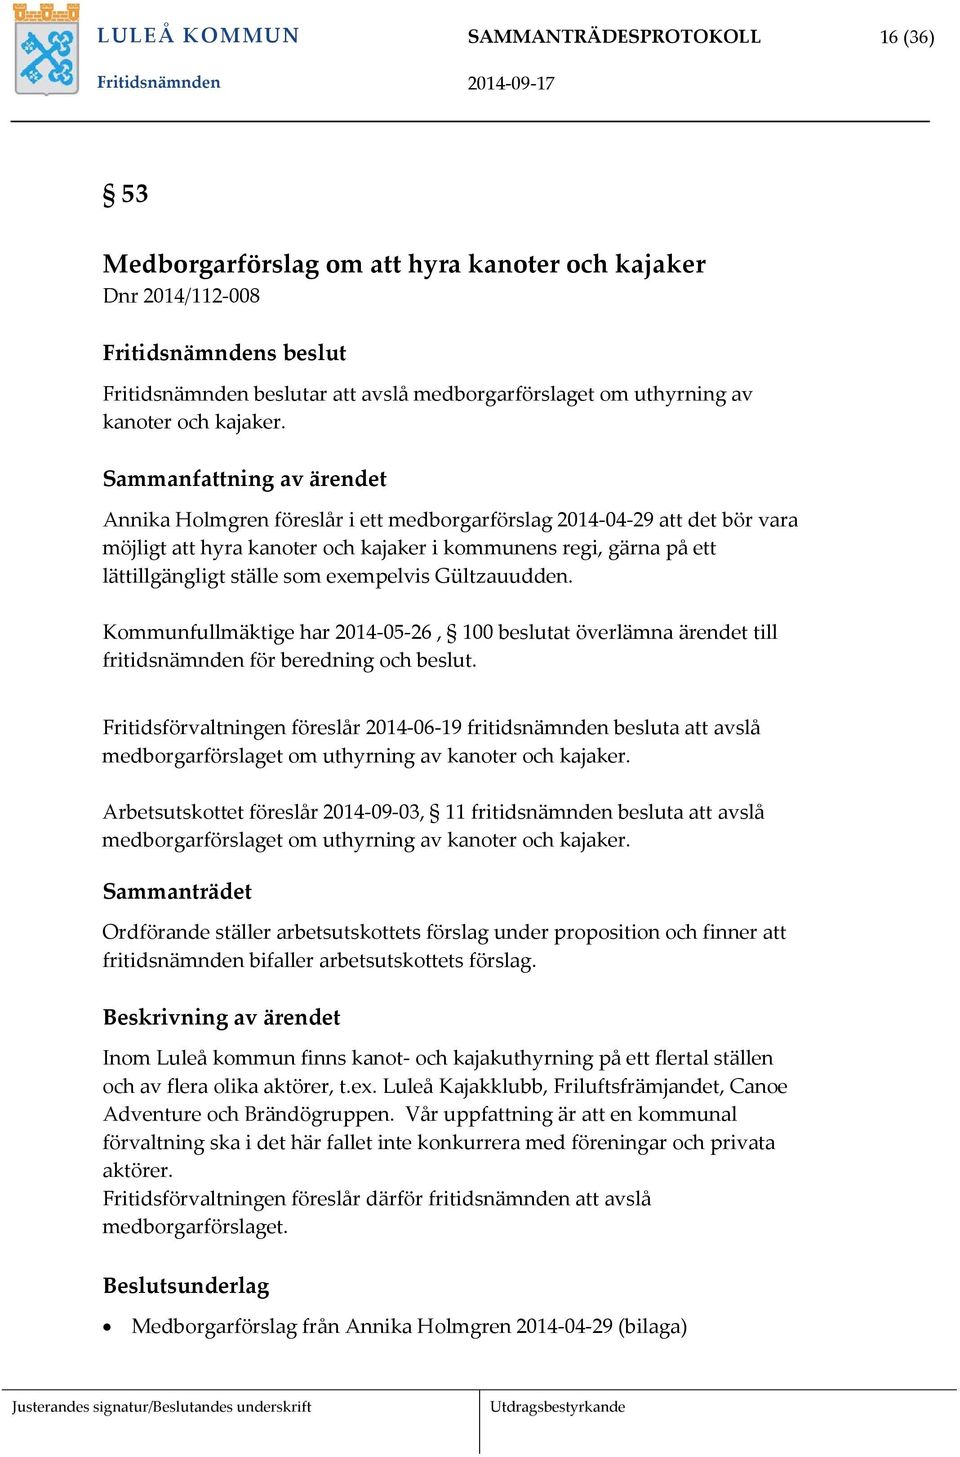 Sammanfattning av ärendet Annika Holmgren föreslår i ett medborgarförslag 2014-04-29 att det bör vara möjligt att hyra kanoter och kajaker i kommunens regi, gärna på ett lättillgängligt ställe som